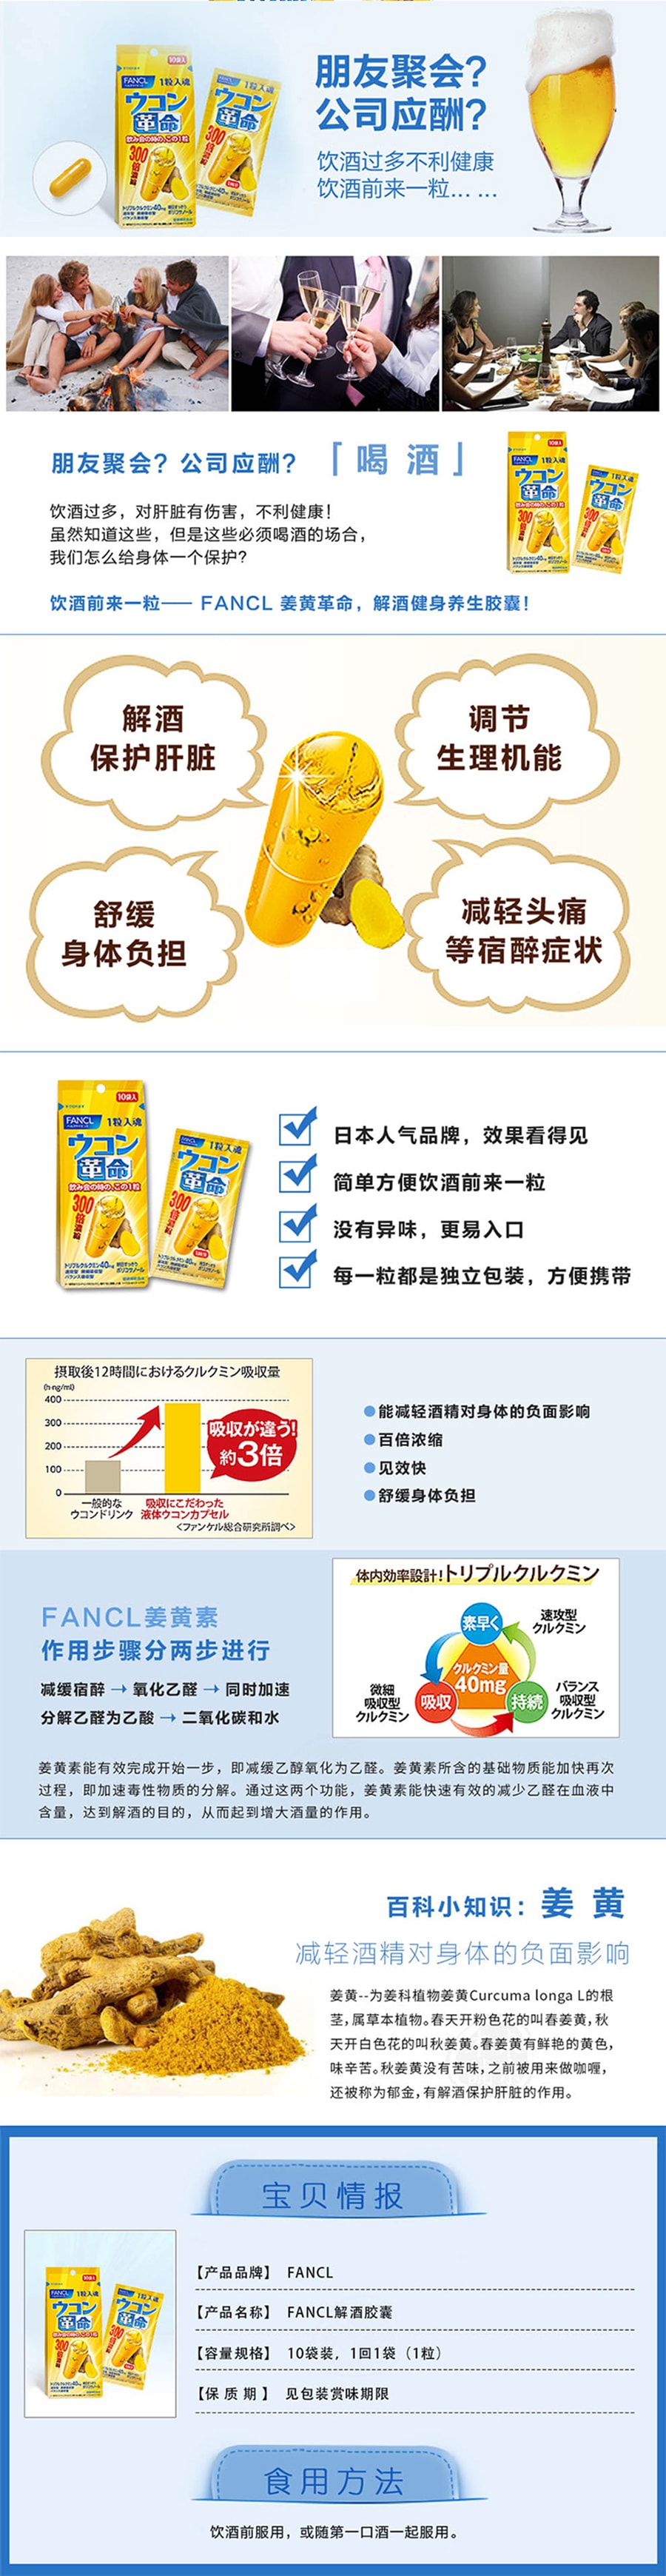 【日本直效郵件 】FANCL無添加芳珂 熱控燃脂30日套裝